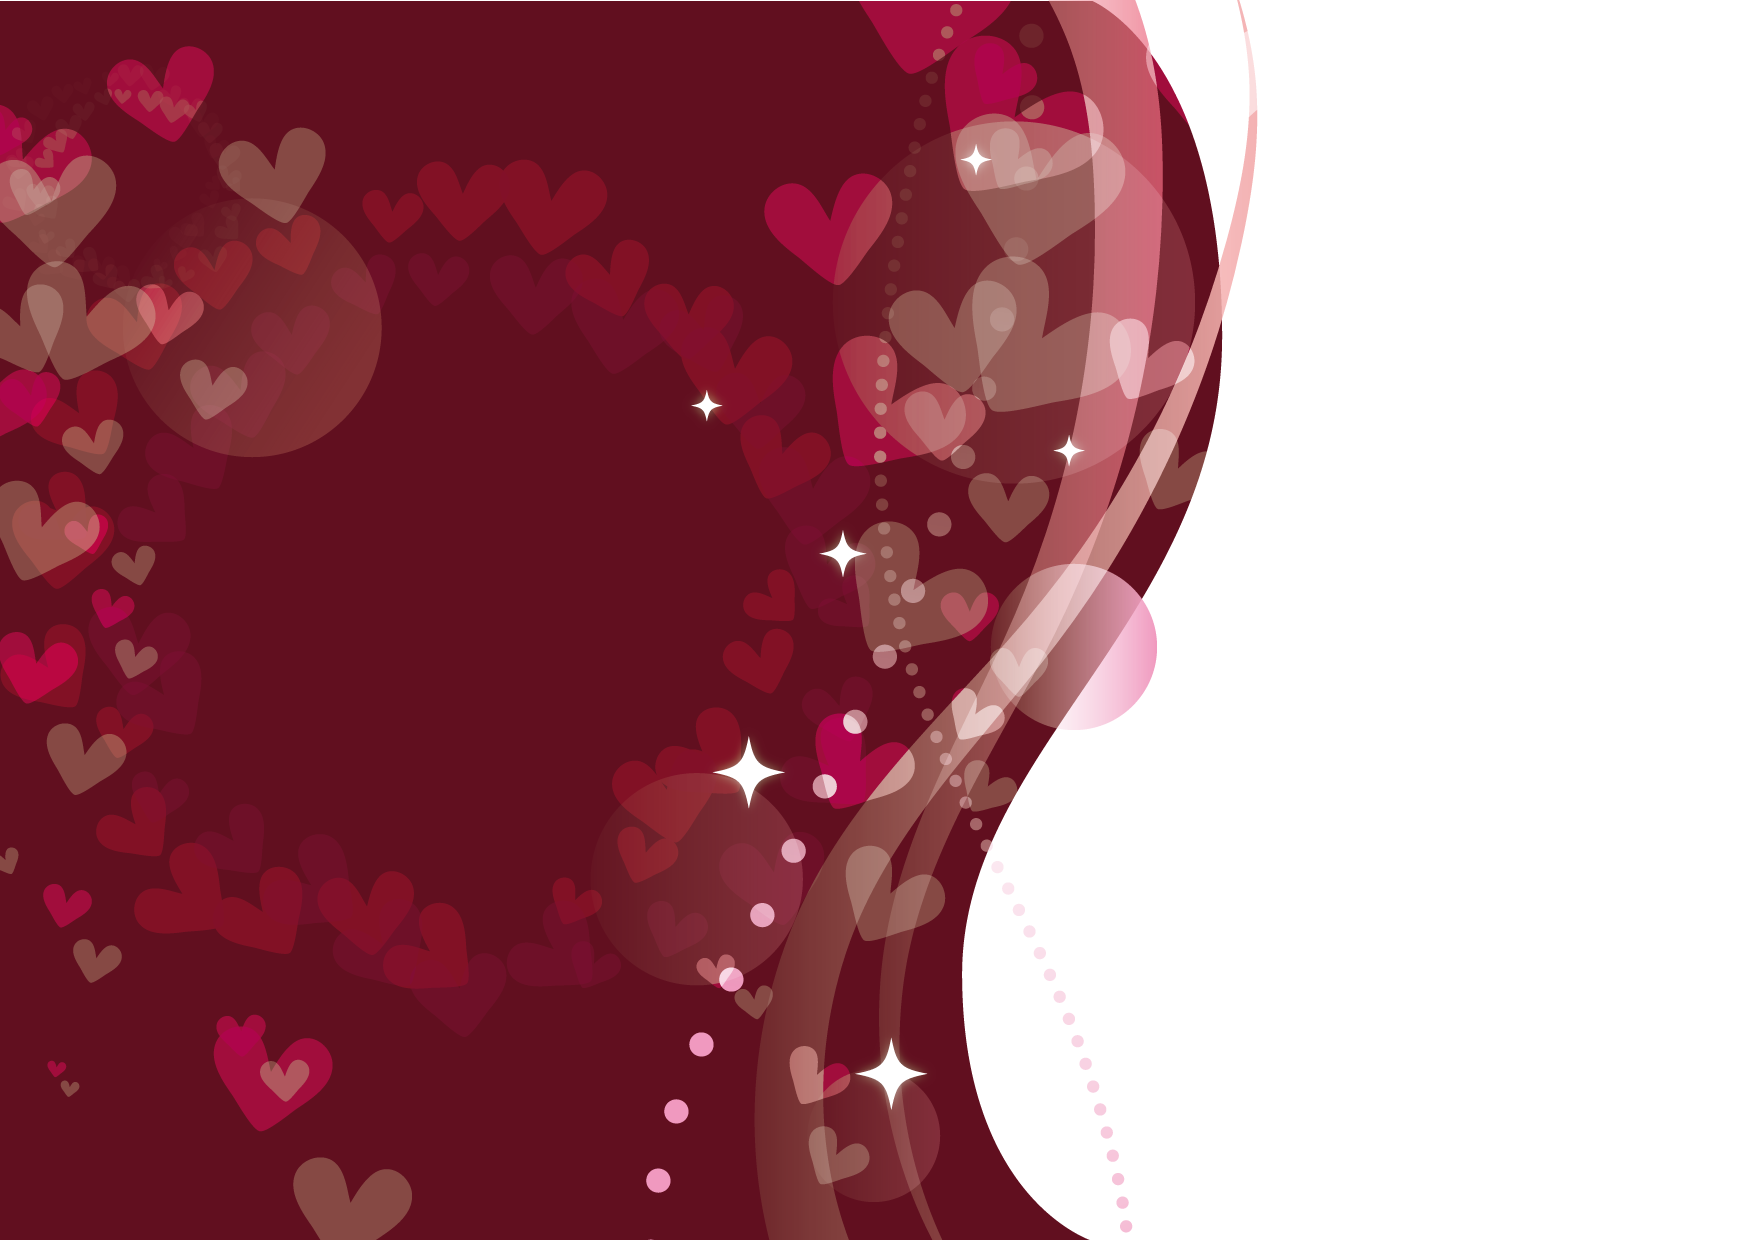 可愛いイラスト無料 バレンタイン ポスター チョコレート色 Free Illustration Valentine Poster Chocolate Color 公式 イラストダウンロード